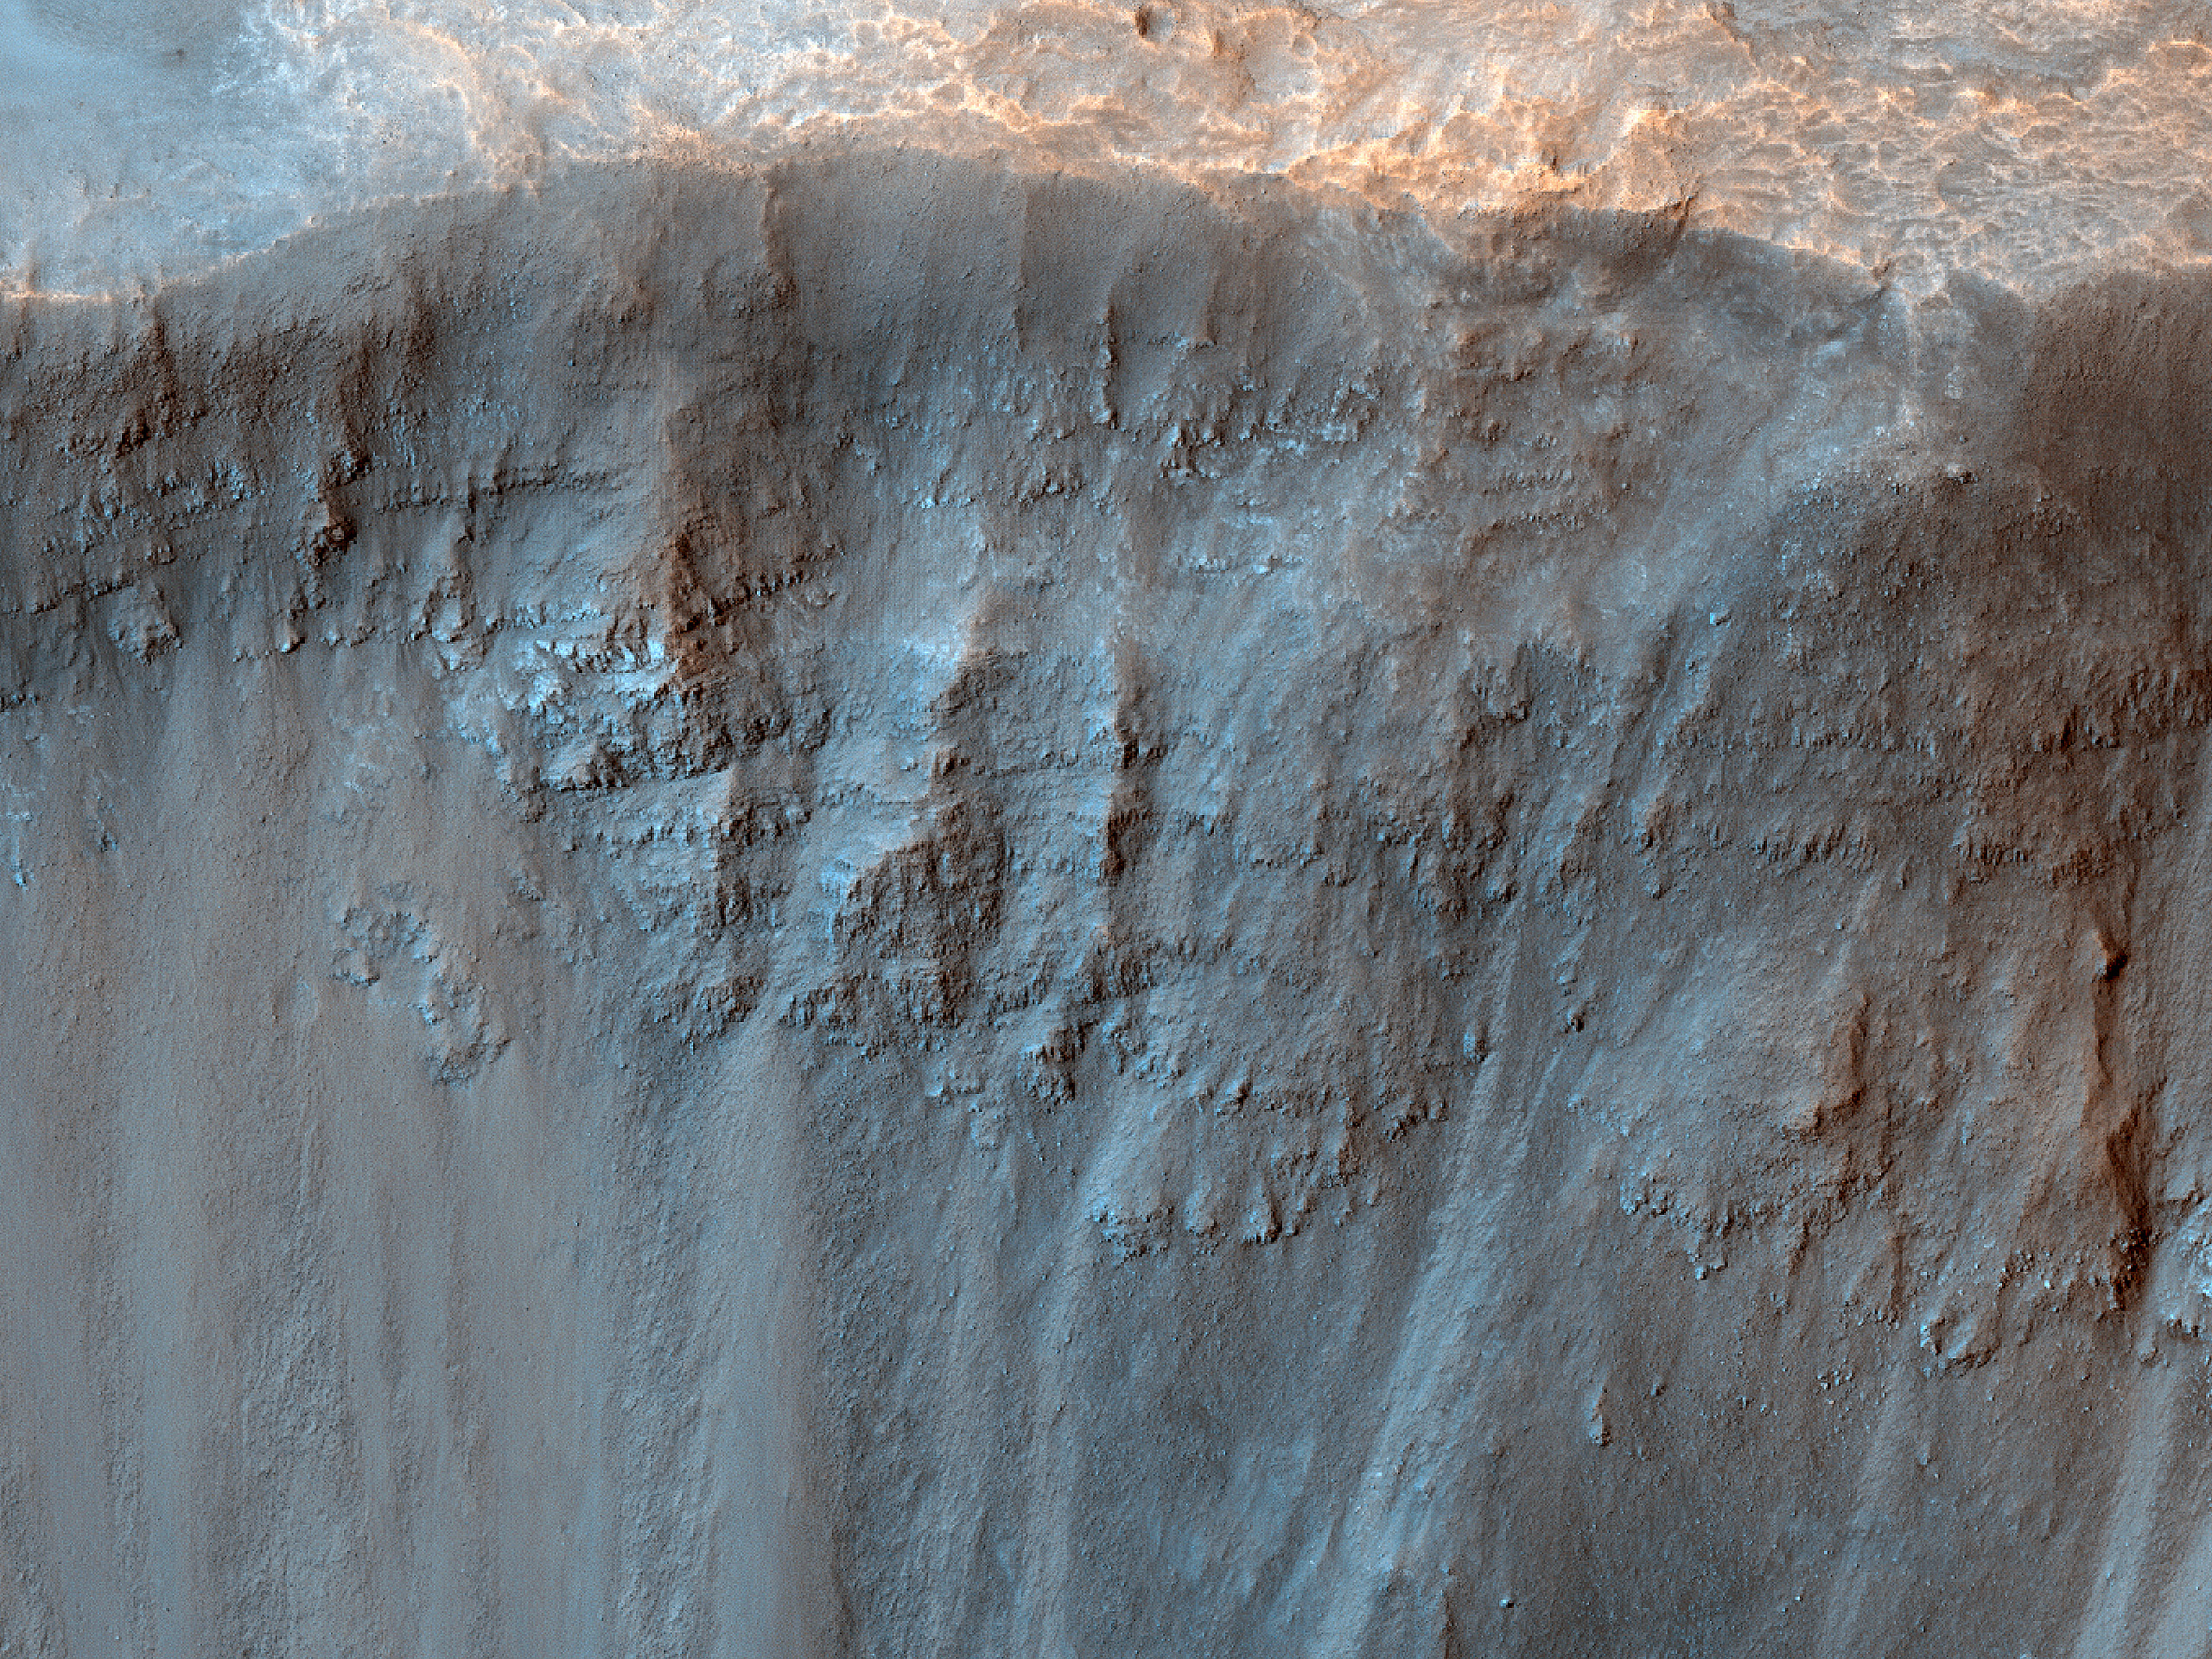 Inspecti clivi in Acidalia Planitia